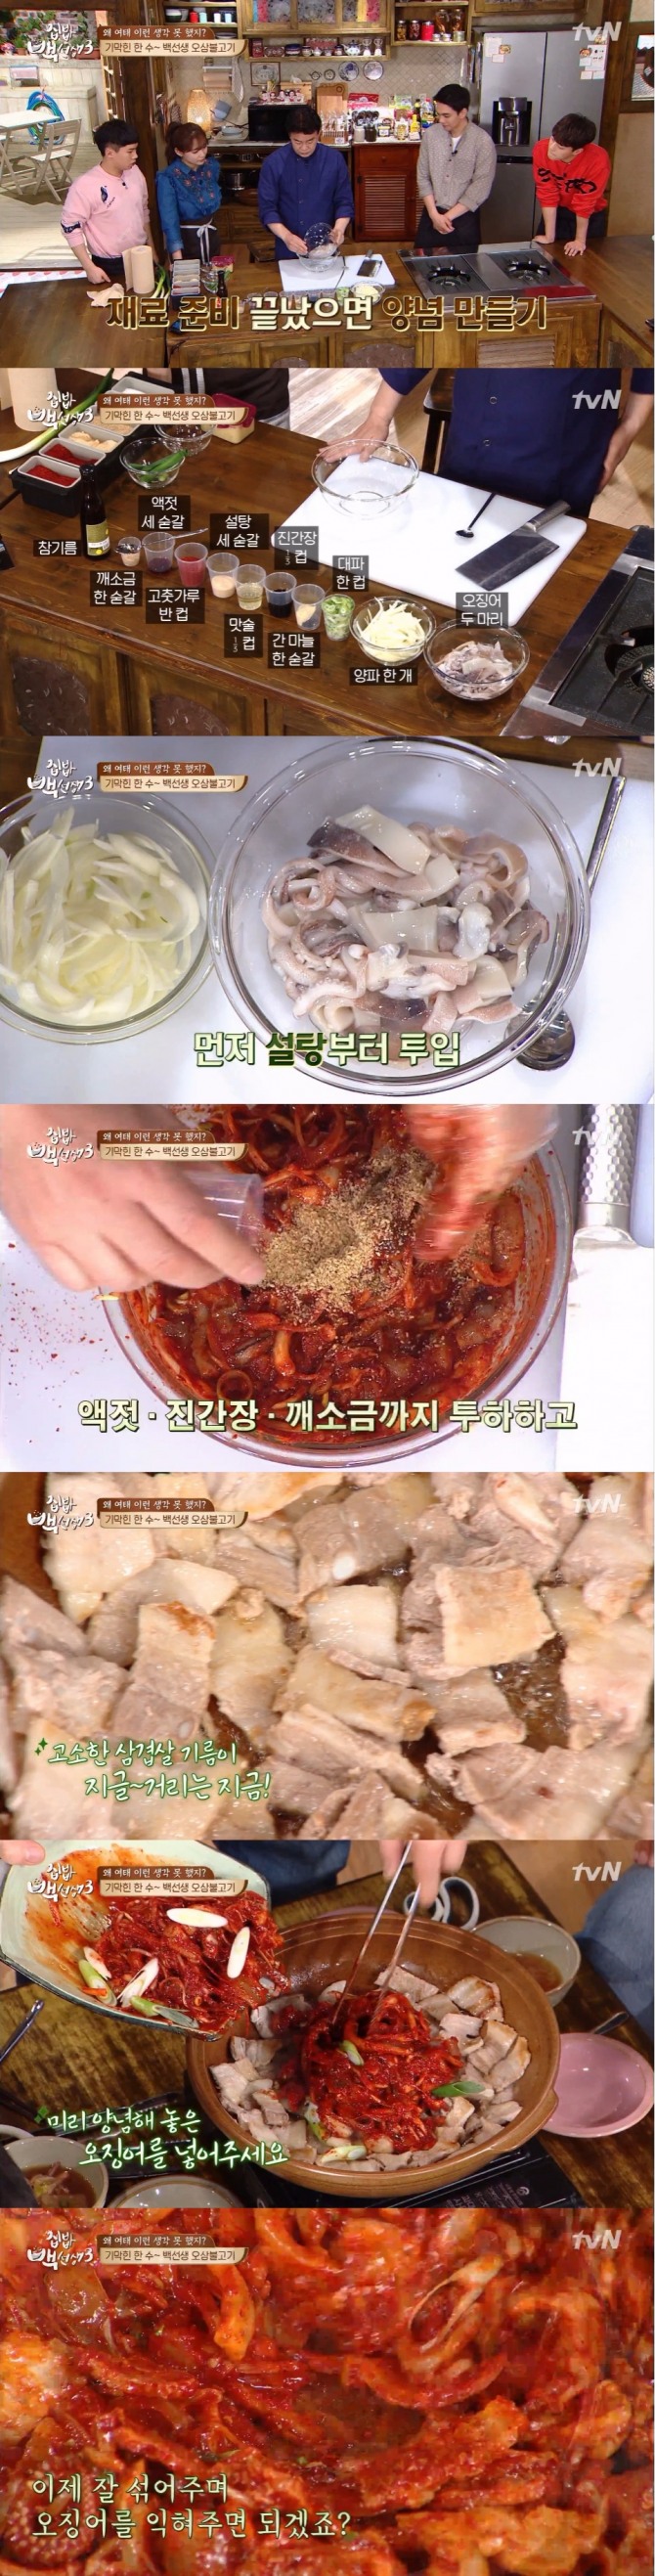 18일 방송된 tvN '집밥 백선생3'에서는 오징어를 주제로 한 요리로 백종원이 '오삼불고기' 레시피를 공개했다. 사진=tvN 방송 캡처